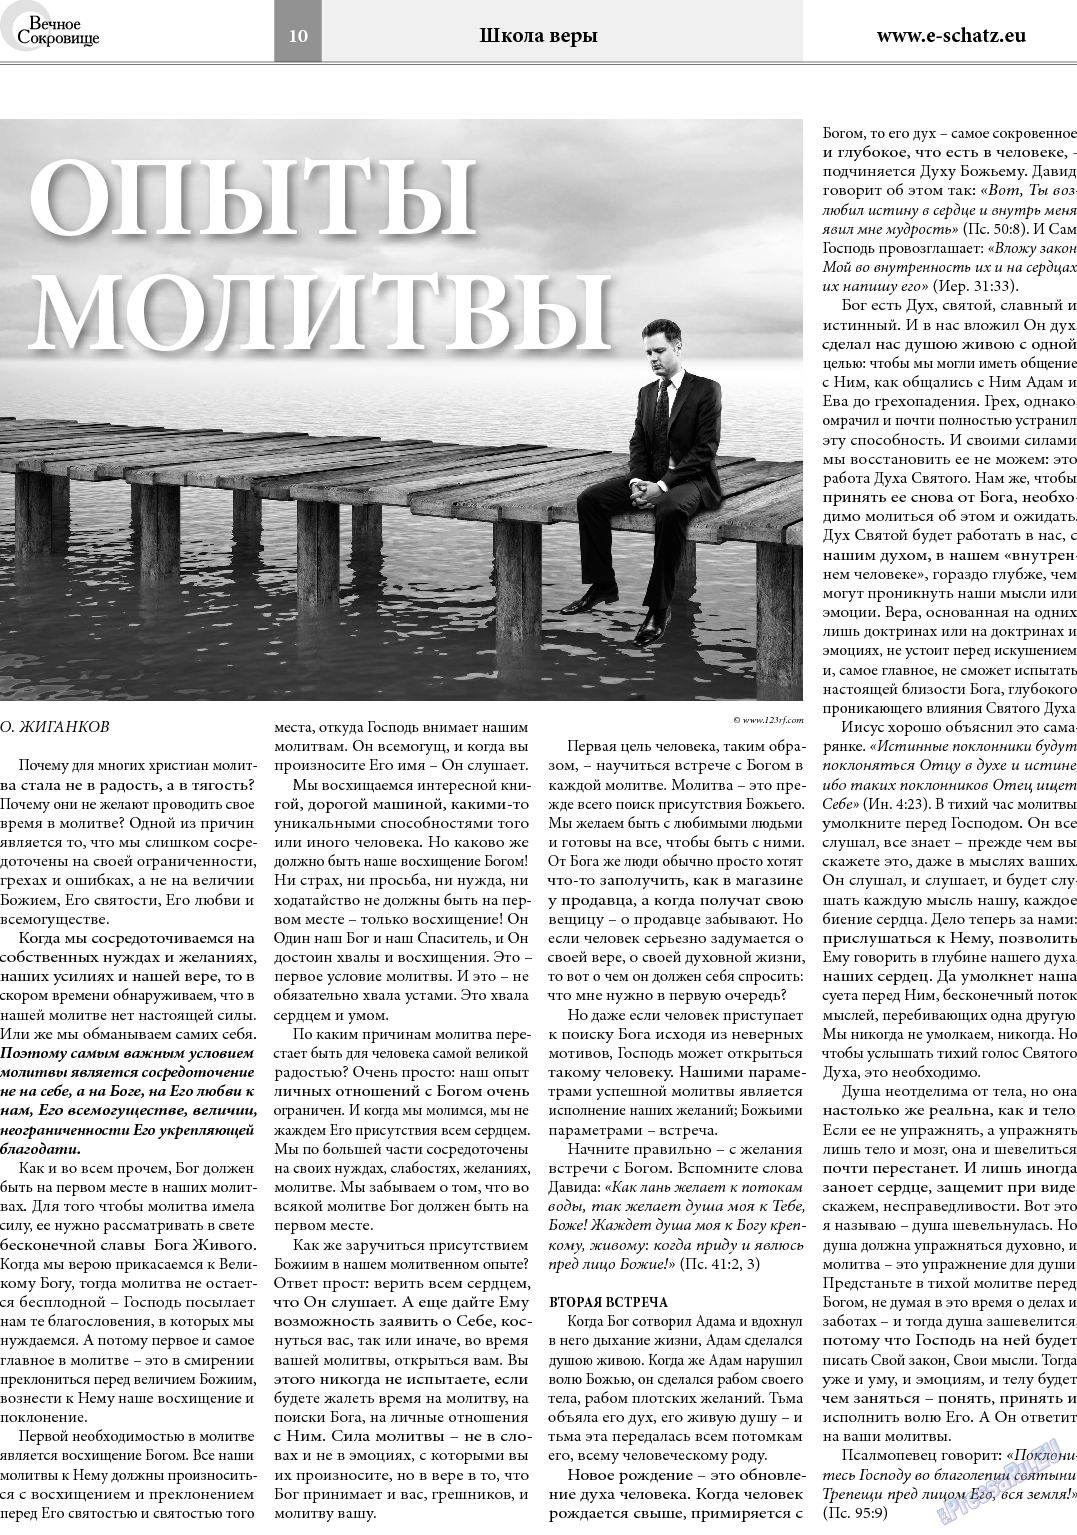 Вечное сокровище, газета. 2014 №1 стр.10